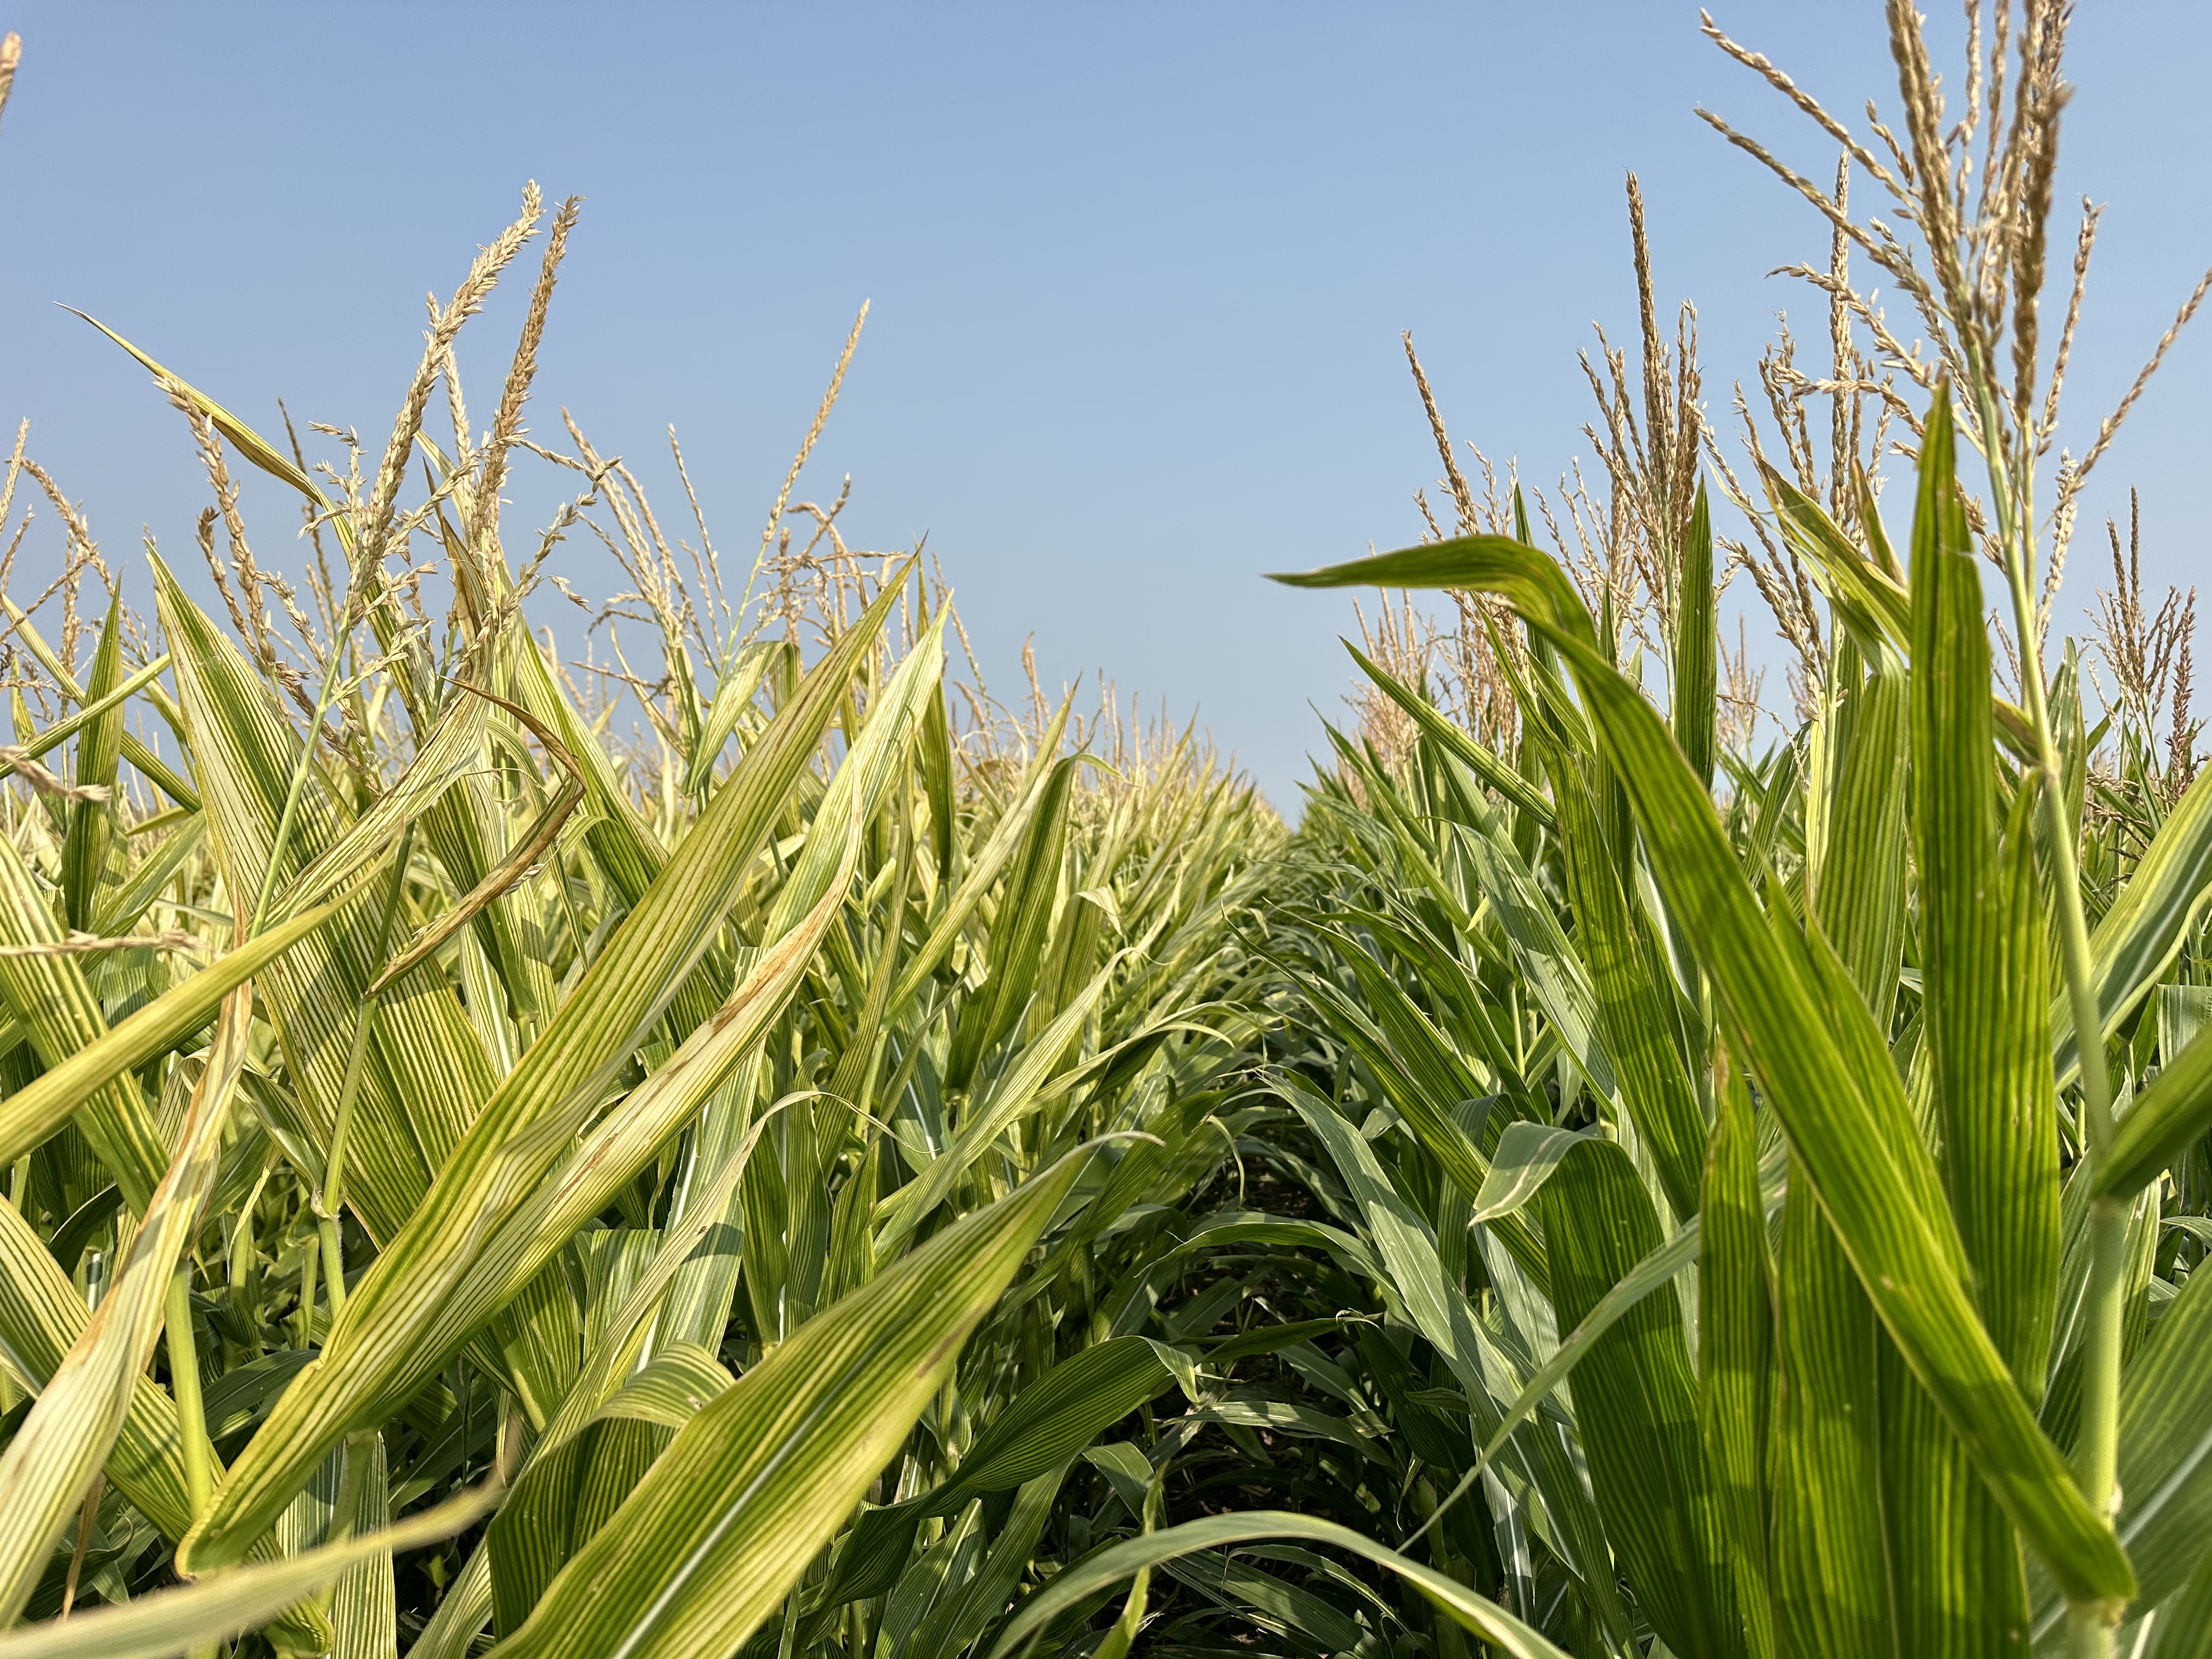 Corn plants lacking nutrients